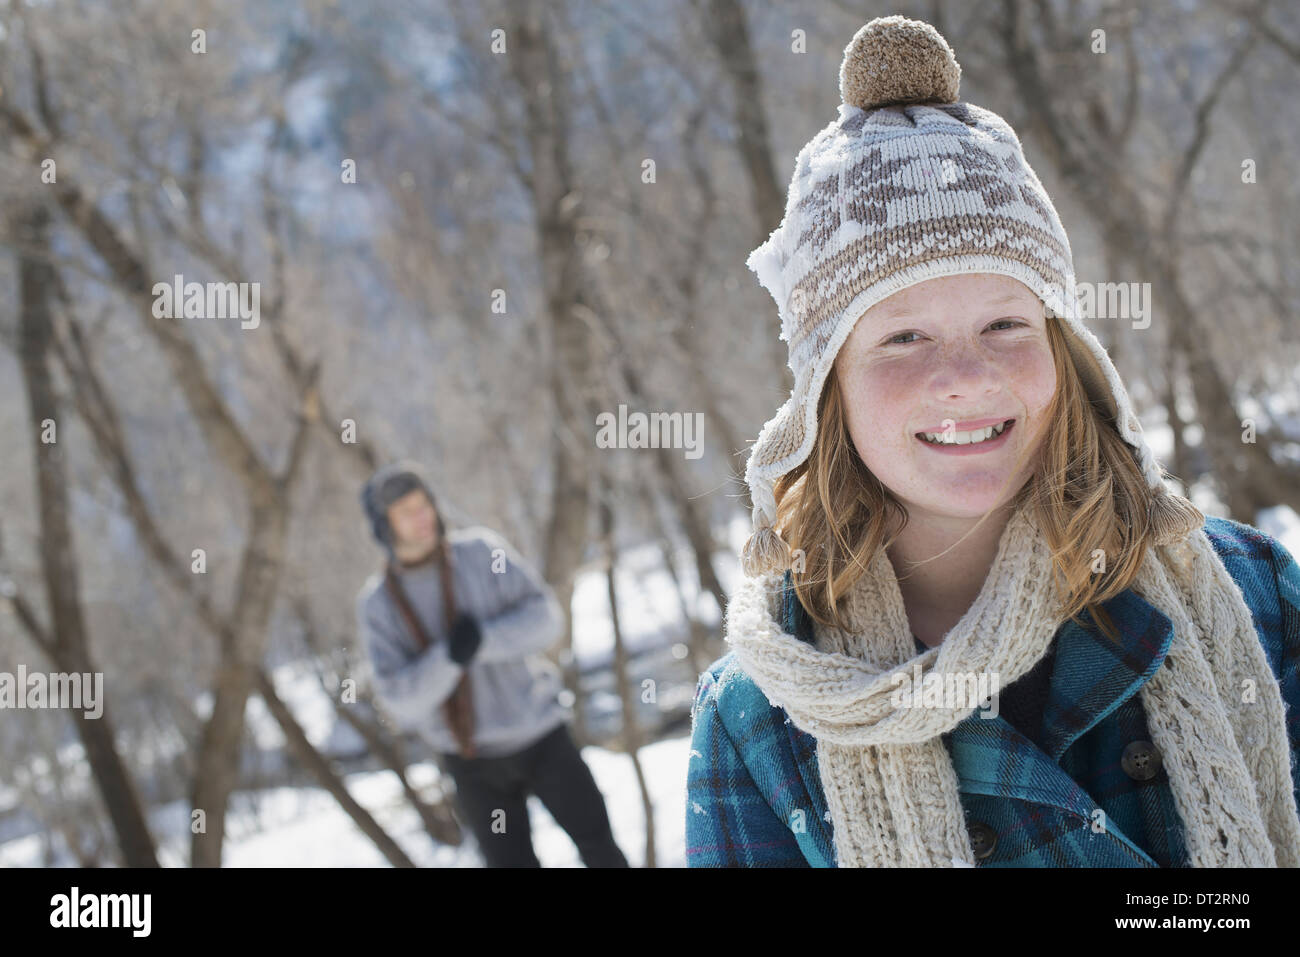 Paysage d'hiver avec neige au sol une jeune fille avec un bobble hat and scarf outdoors un homme dans l'arrière-plan Banque D'Images